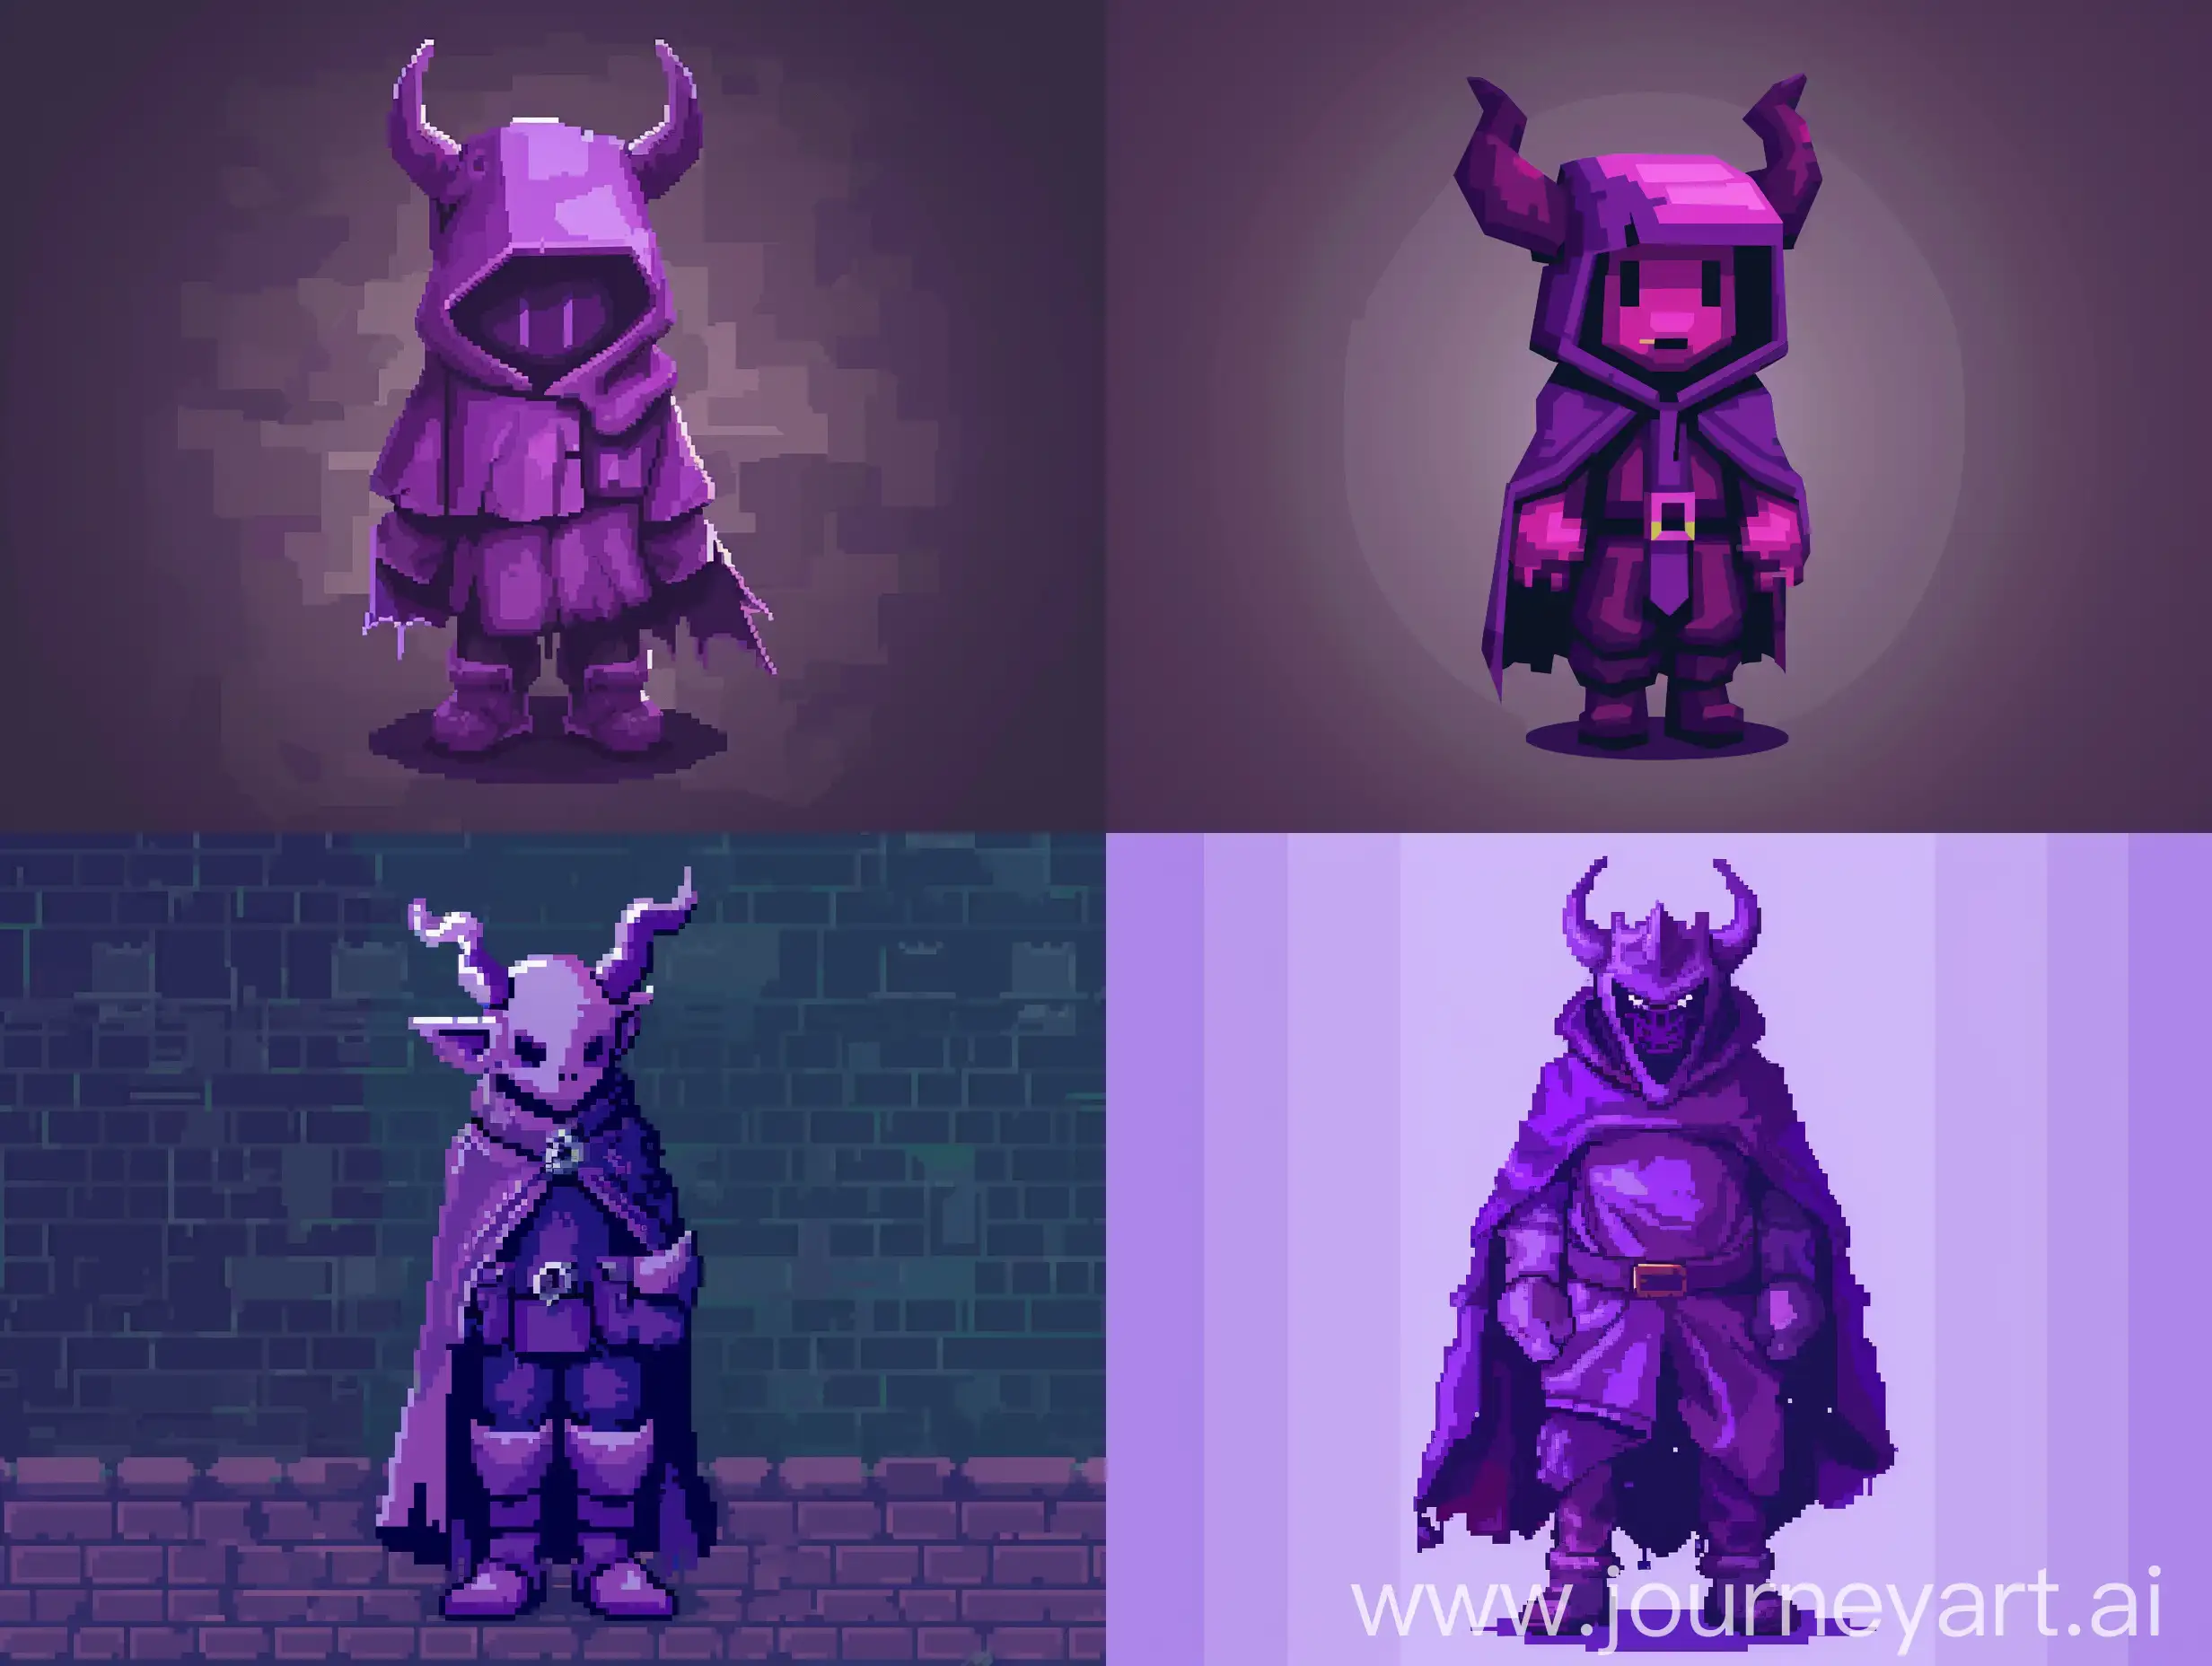 создай пиксельного персонажа в фиолетовых оттенках с рогами демона и плащом для игры жанра Roguelike
